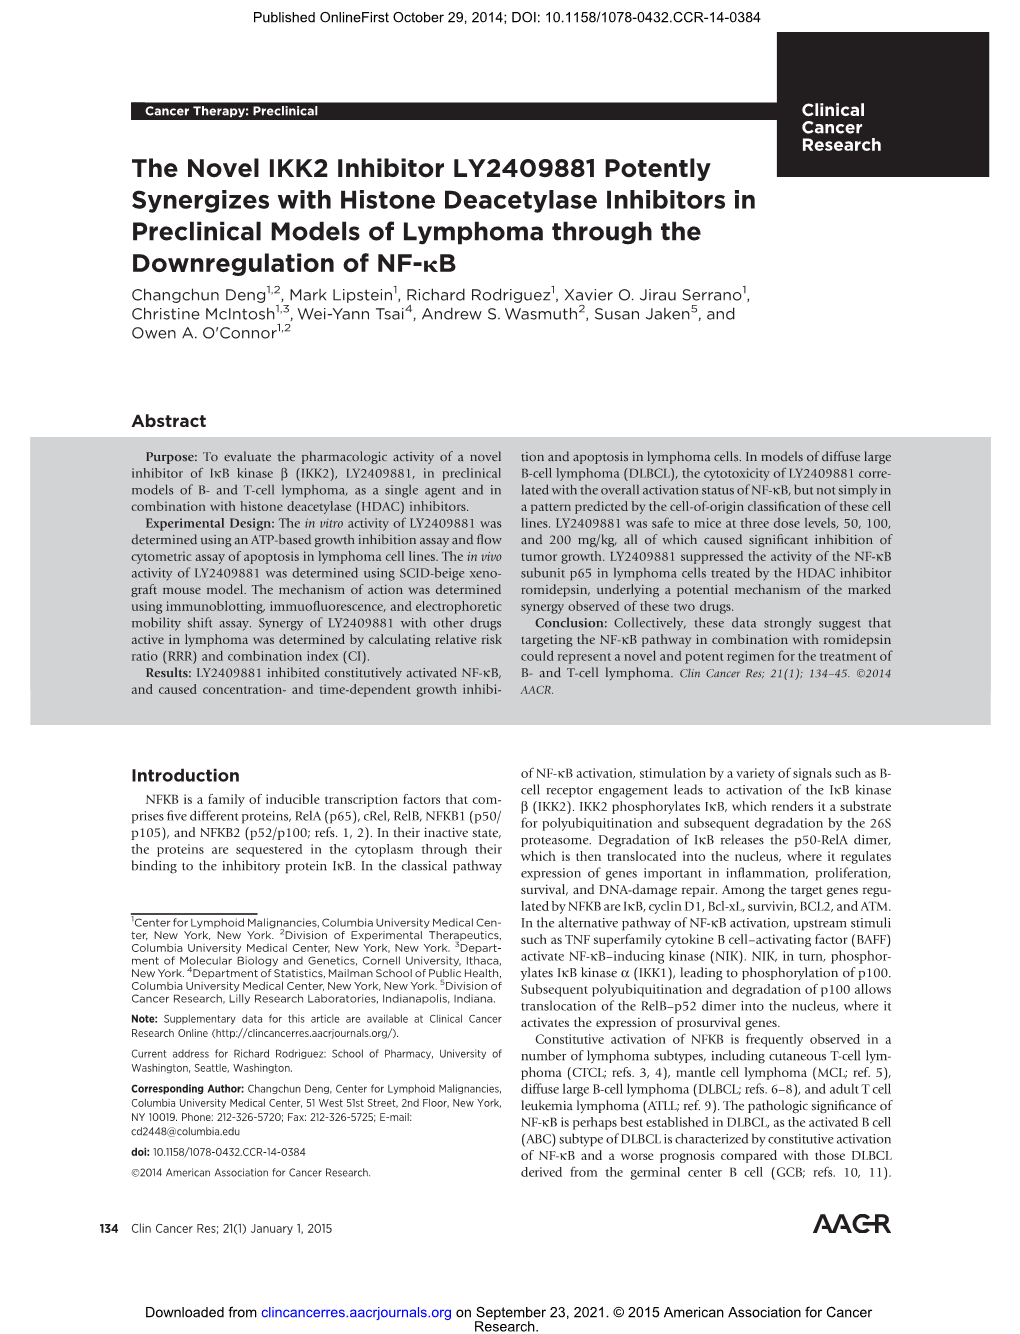 The Novel IKK2 Inhibitor LY2409881 Potently Synergizes with Histone